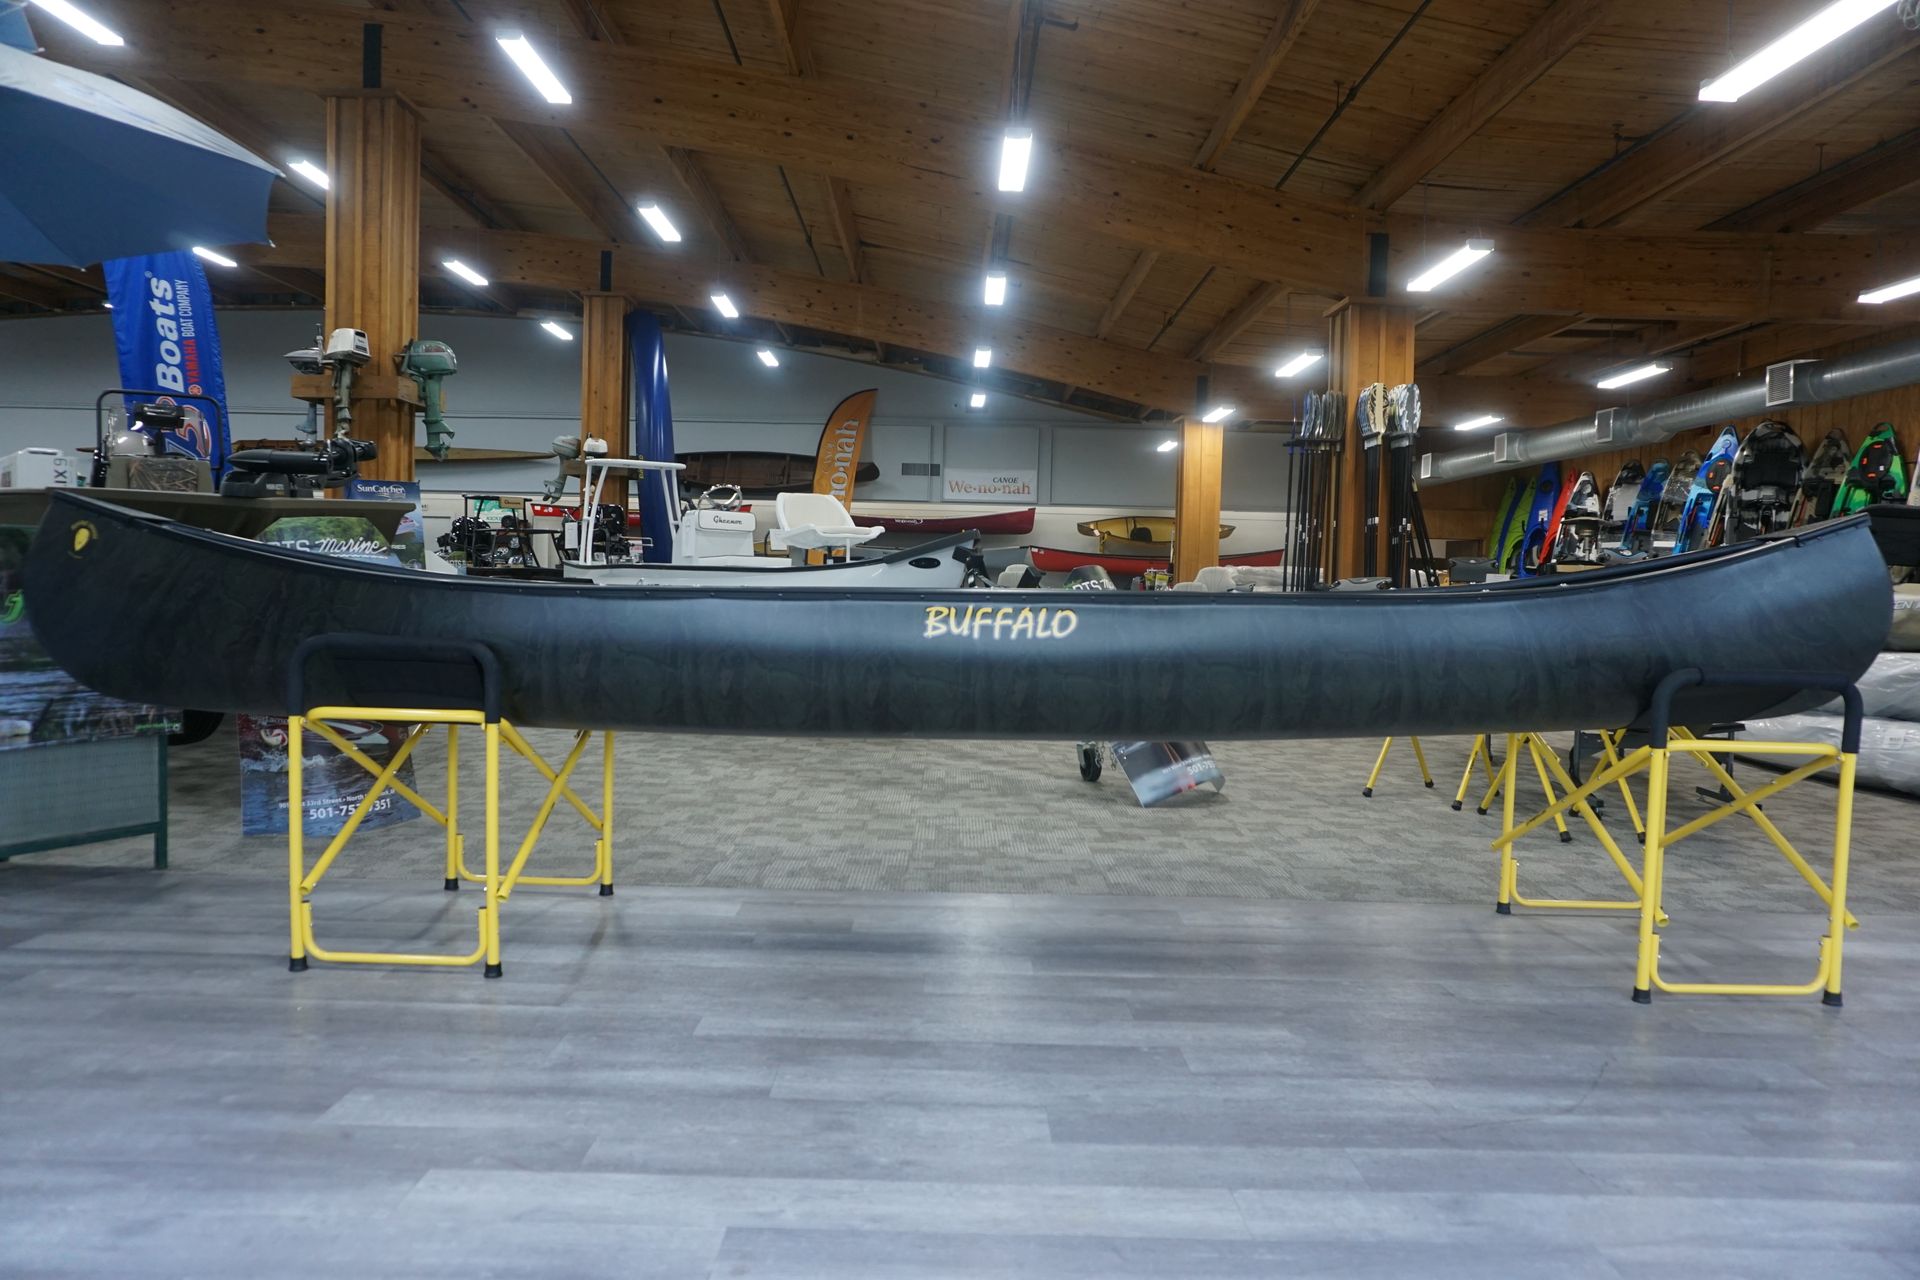 Buffalo Canoe